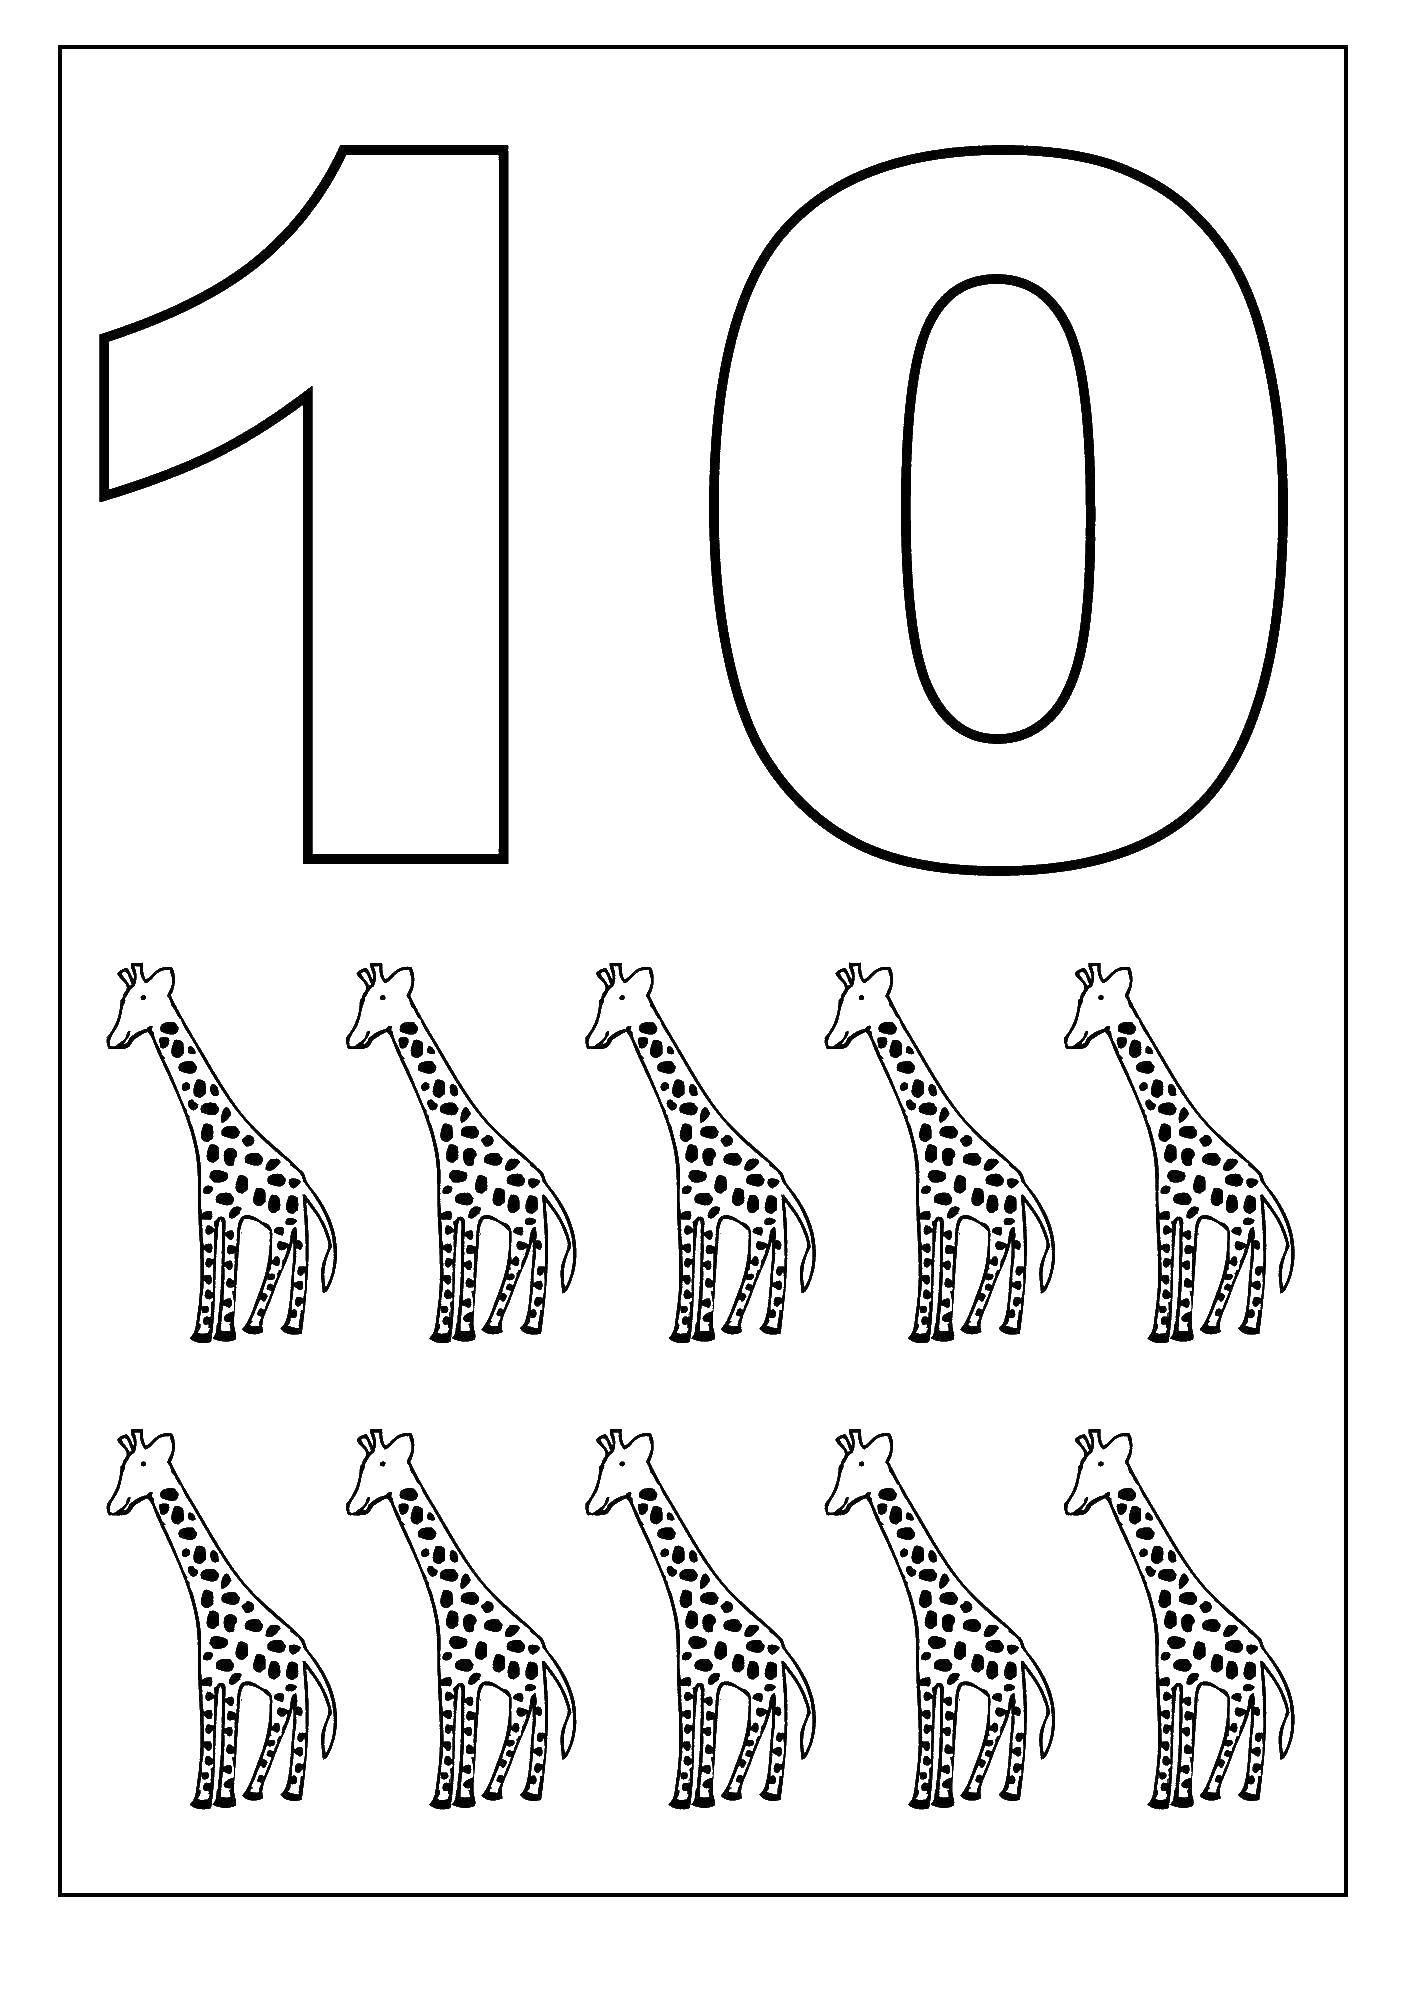 Название: Раскраска Десять жирафов. Категория: Цифры. Теги: цифры, 10.